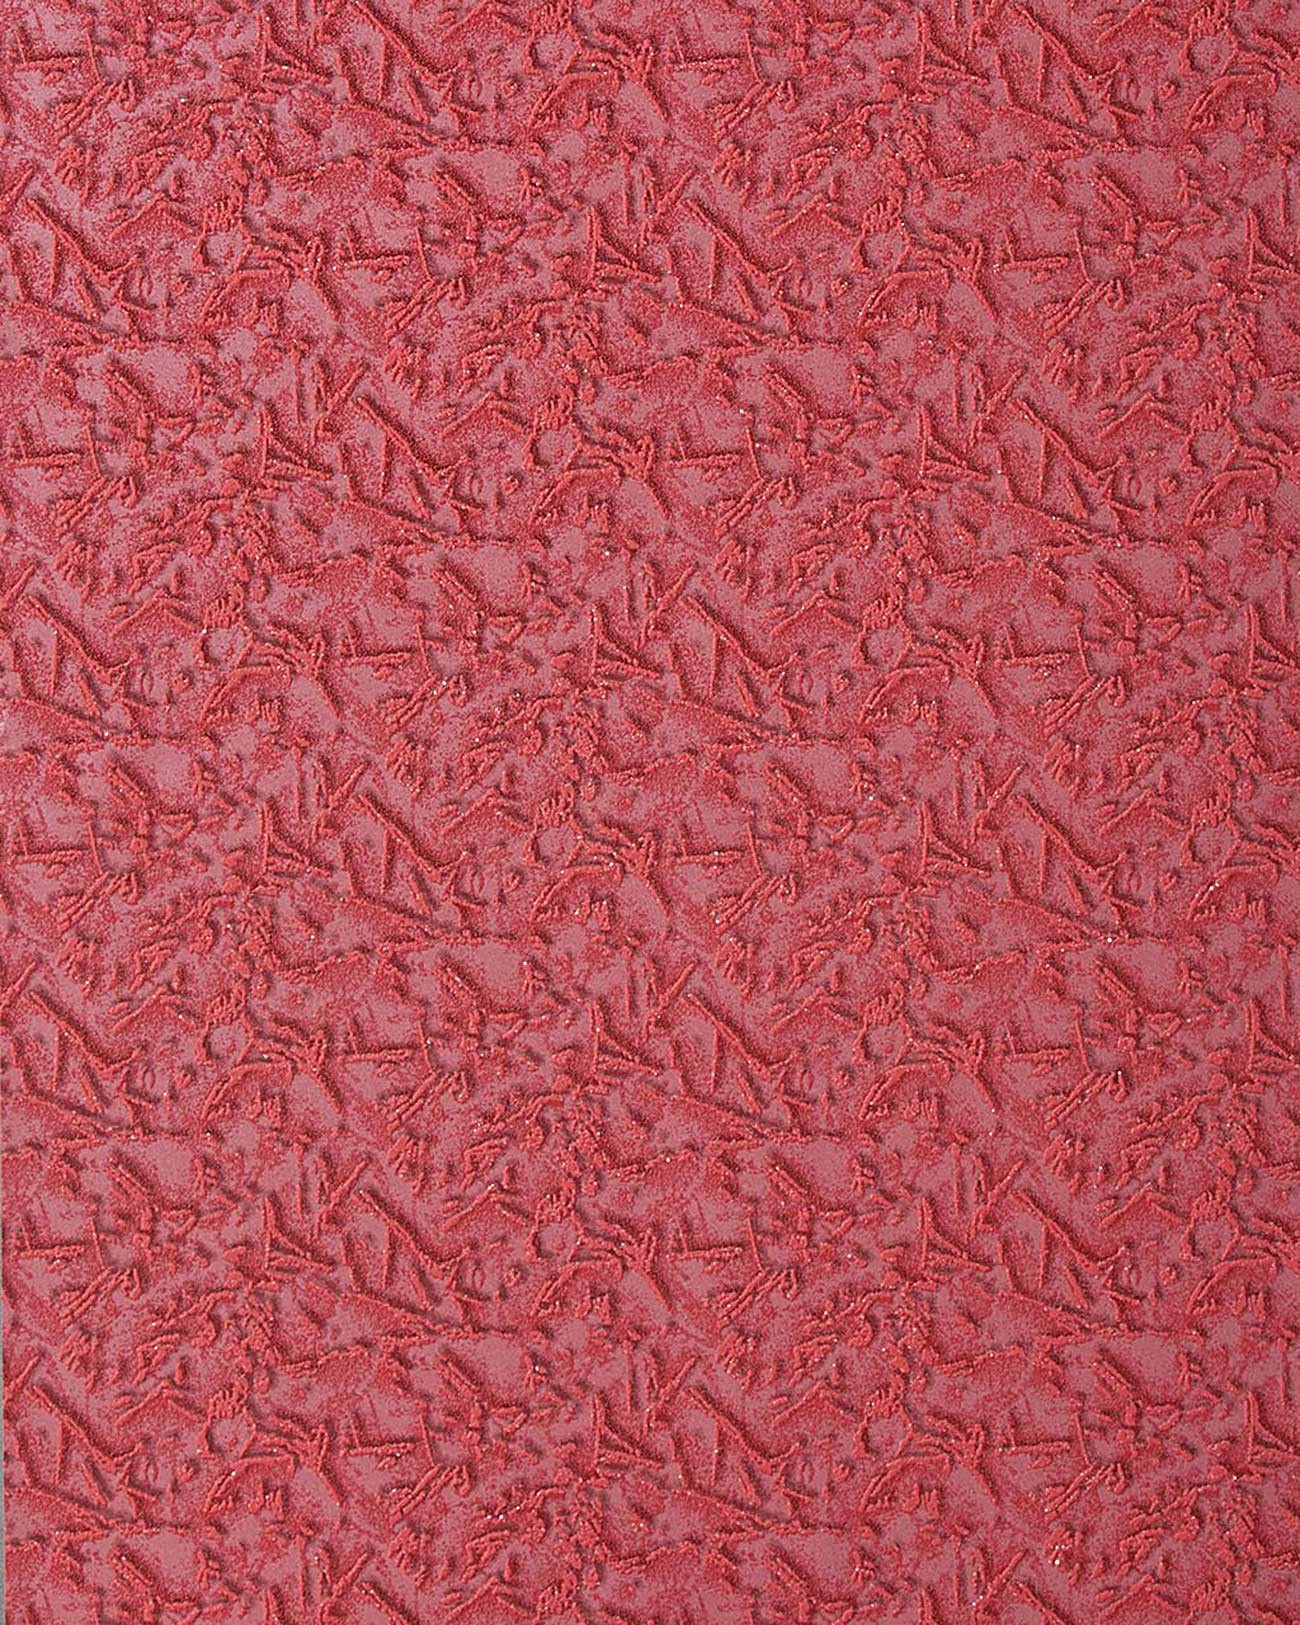 EDEM 261 54 deco textured blown vinyl wallpaper red sraspberry red